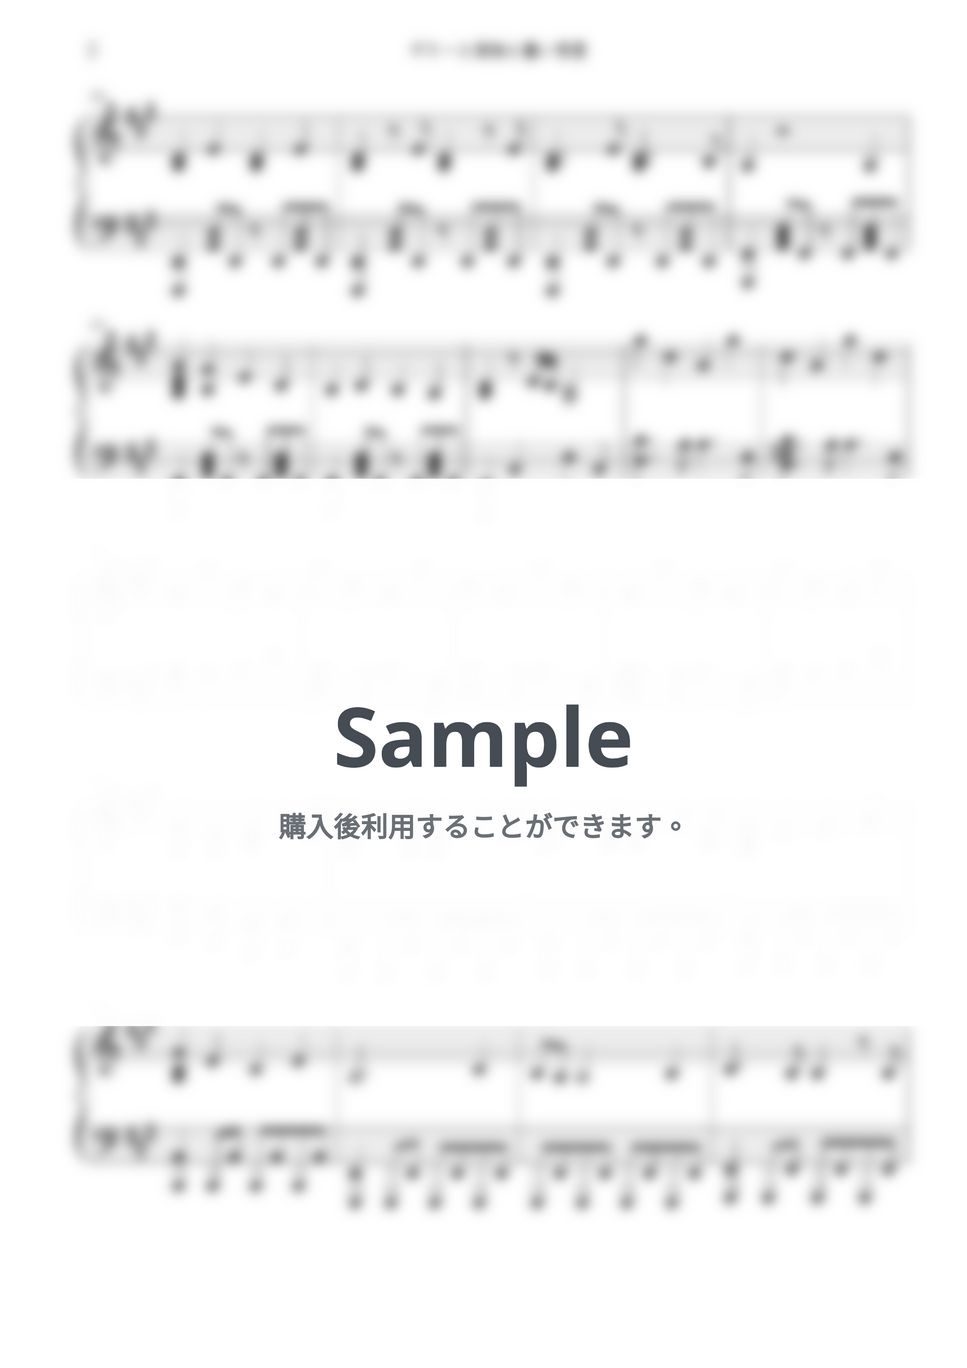 音羽-otoha- - ギターと孤独と蒼い惑星 (ぼっち・ざ・ろっく！ OST) by Free Space / Anime Piano Covers